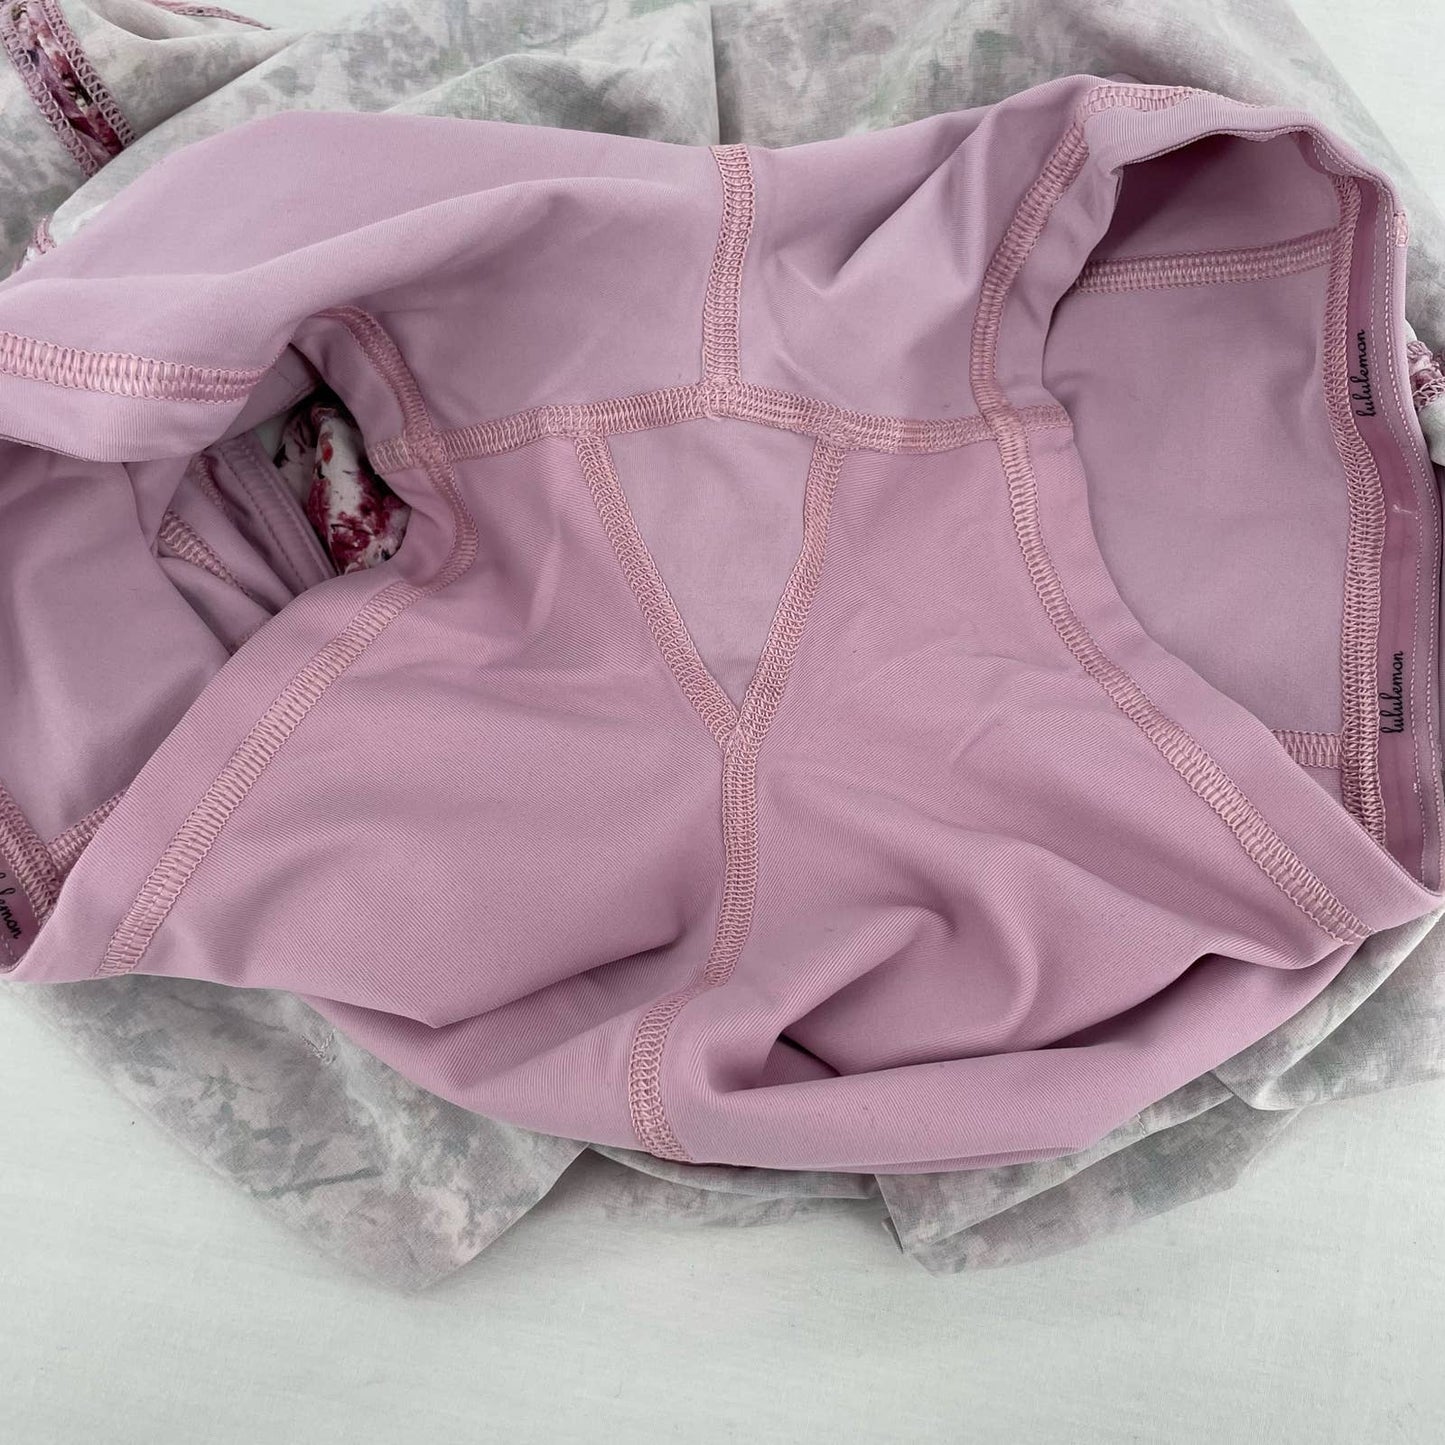 Lululemon Pace Rival Skirt Pink Blossom Spritz Floral Active Tennis Skort Size 4